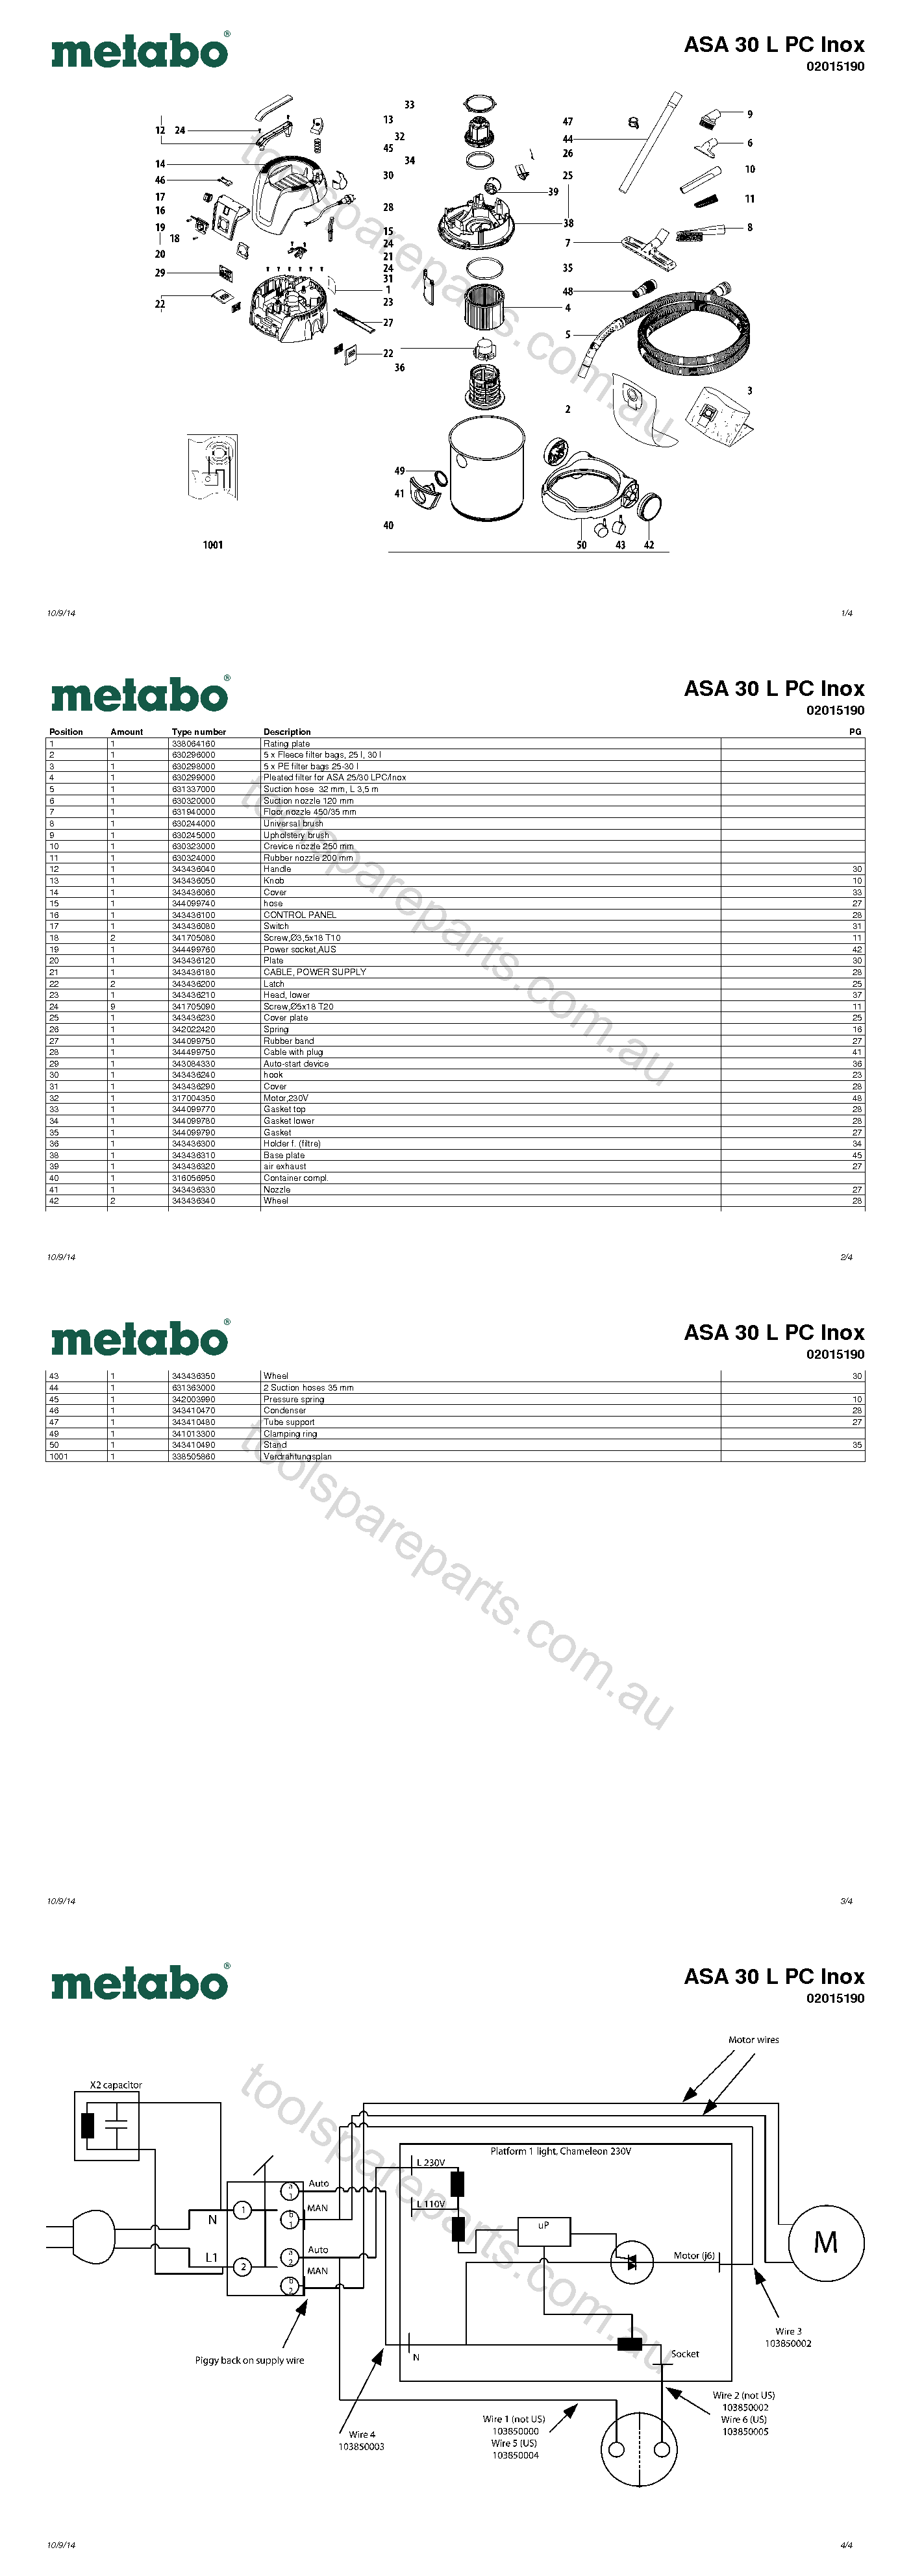 Metabo ASA 30 L PC Inox 02015190  Diagram 1